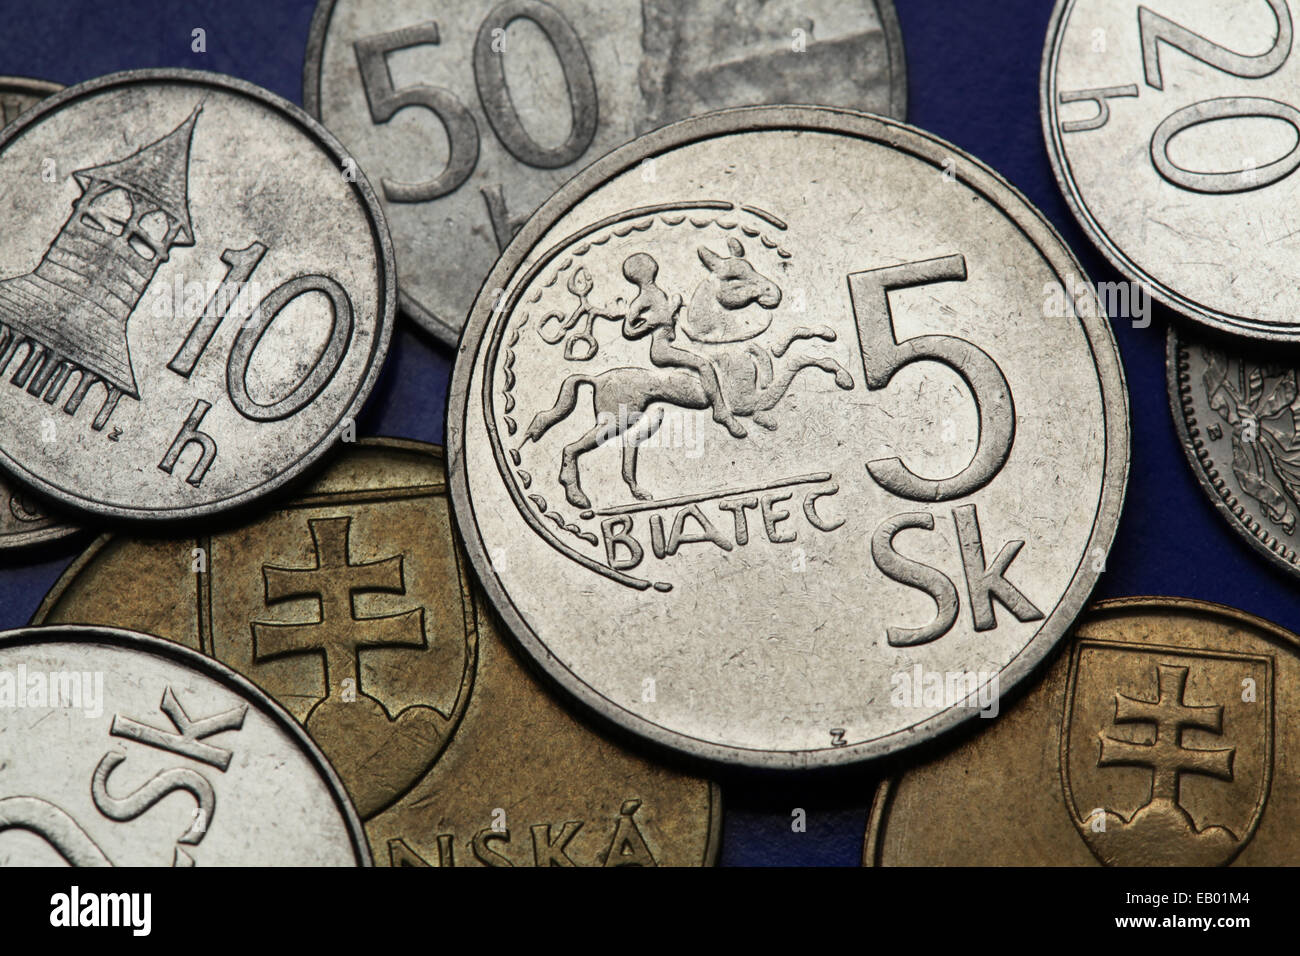 Münzen der Slowakei. Keltische Münze Biatec aus dem 1. Jahrhundert v. Chr. dargestellt auf der slowakischen fünf Kronen Münze. Stockfoto